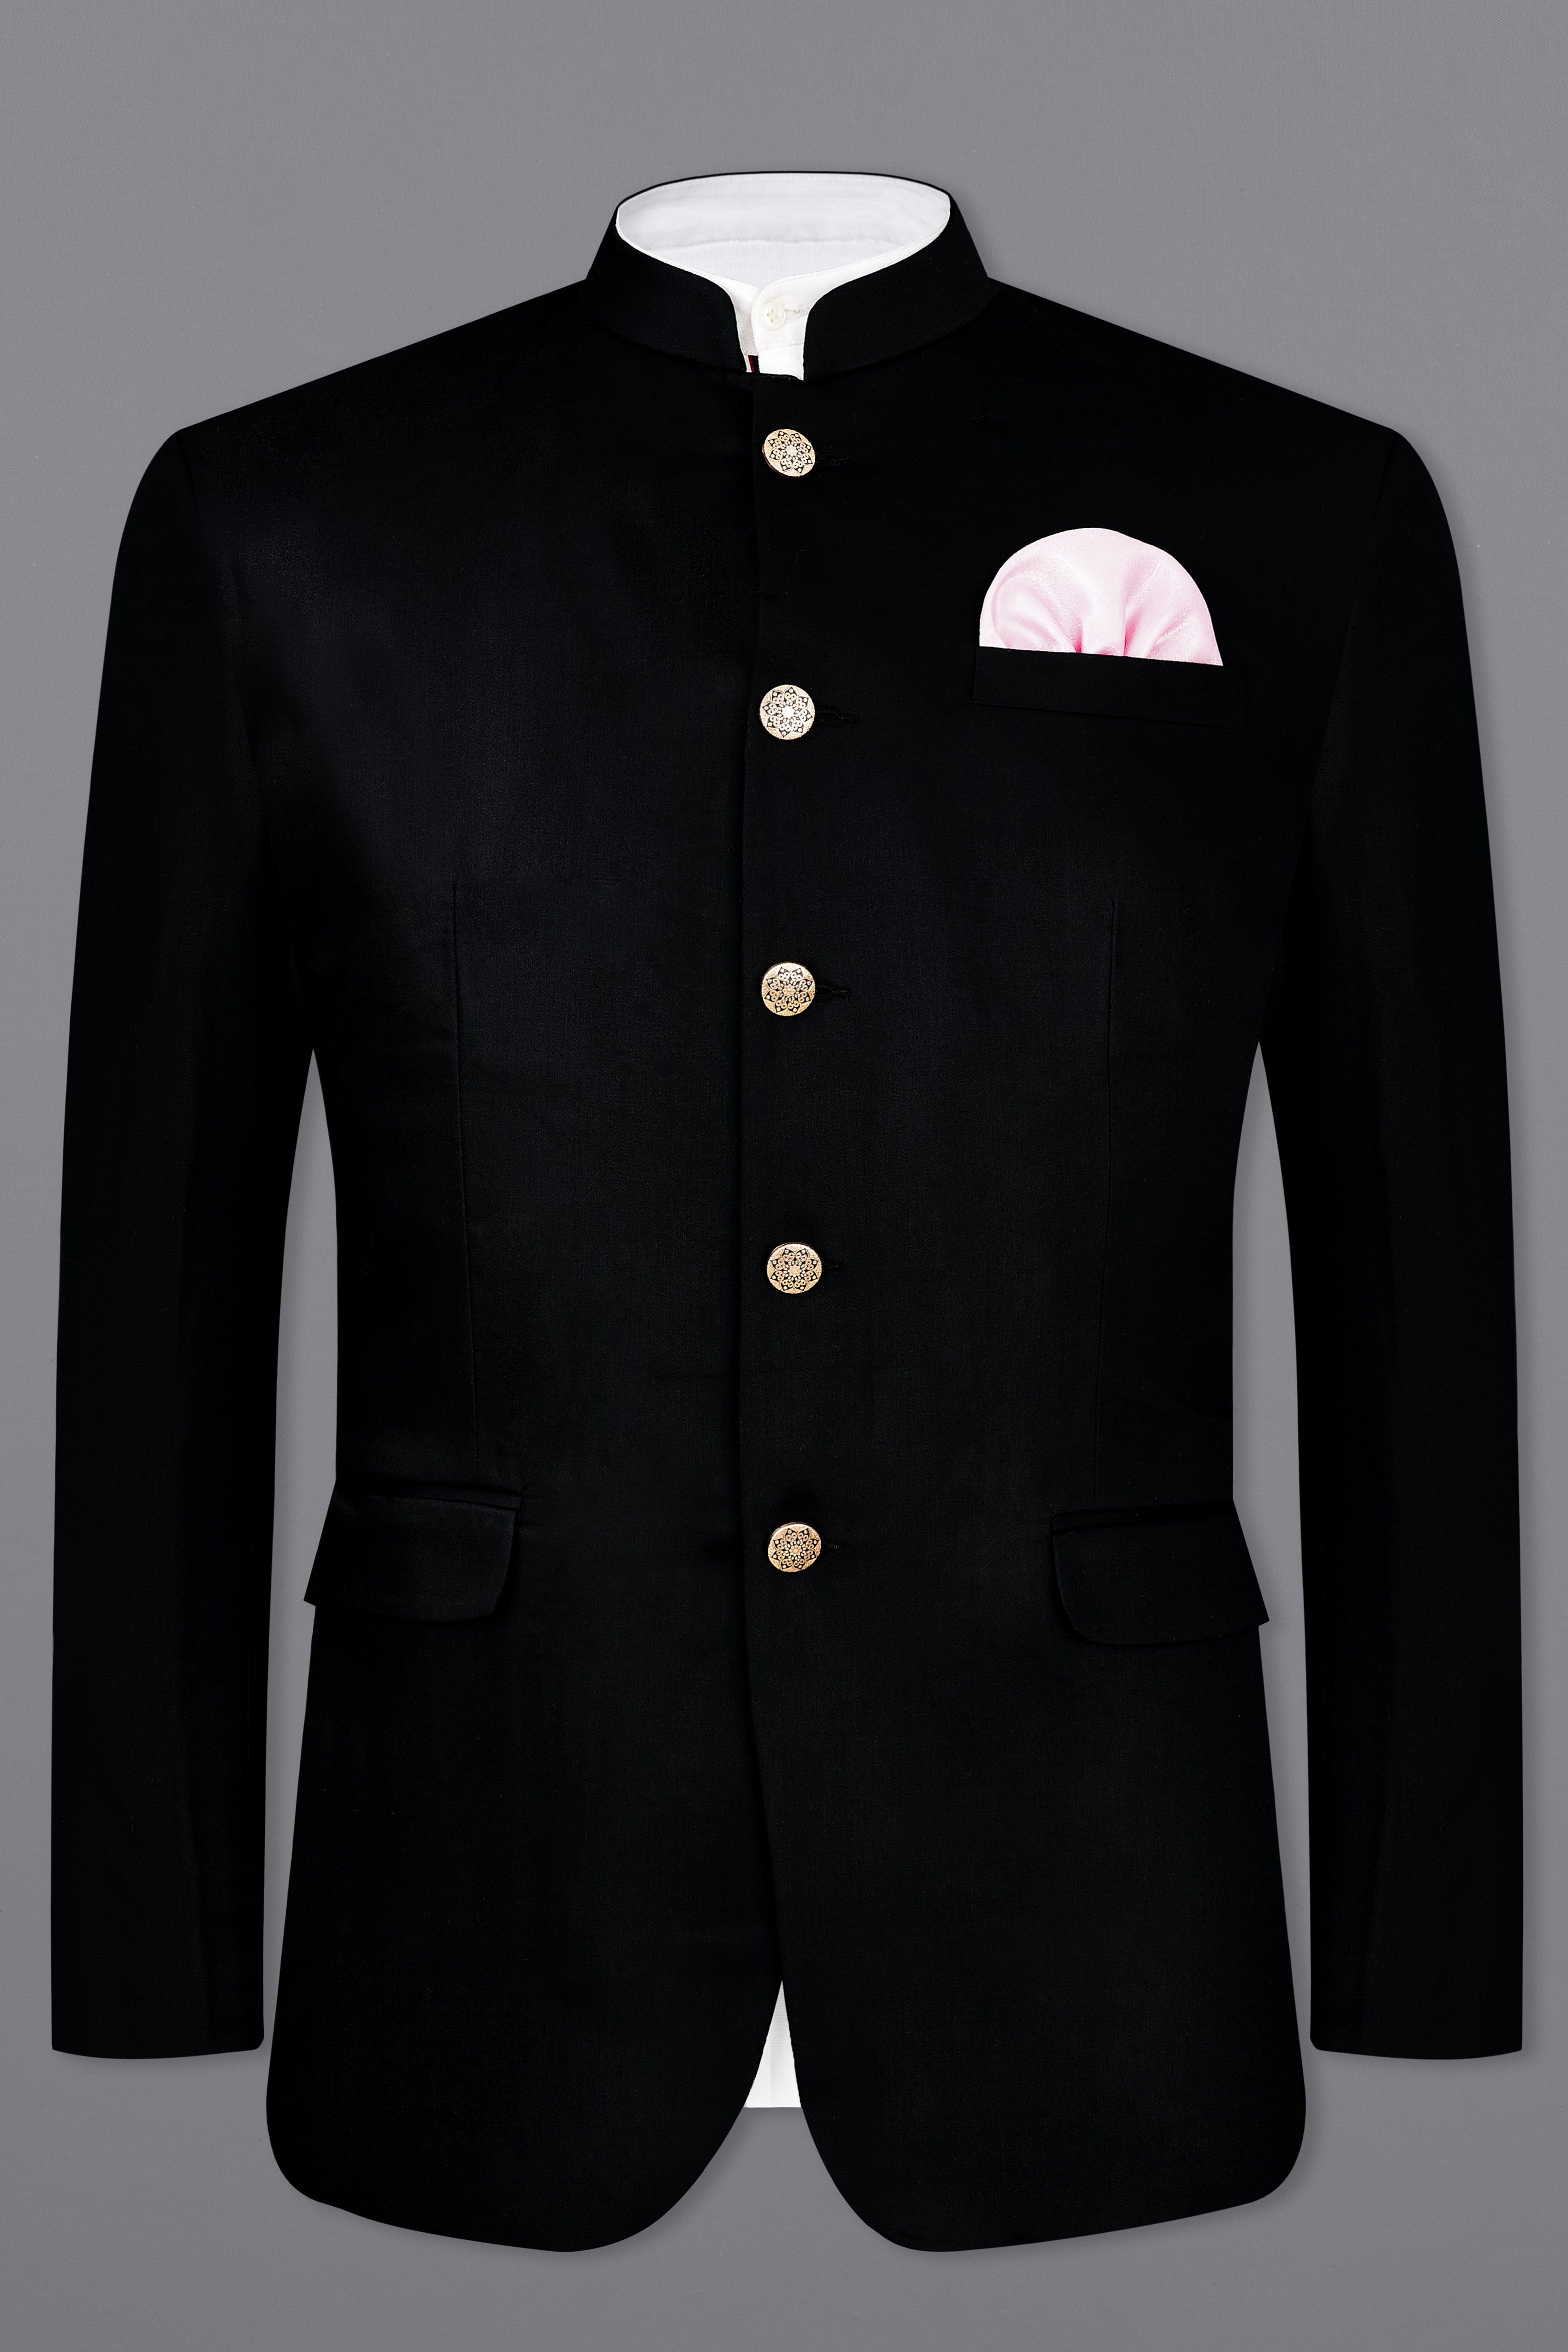 Men Black Suits 2 Piece Designer Jodhpuri Wedding Dinner Suits(Coat+Pants)  | eBay